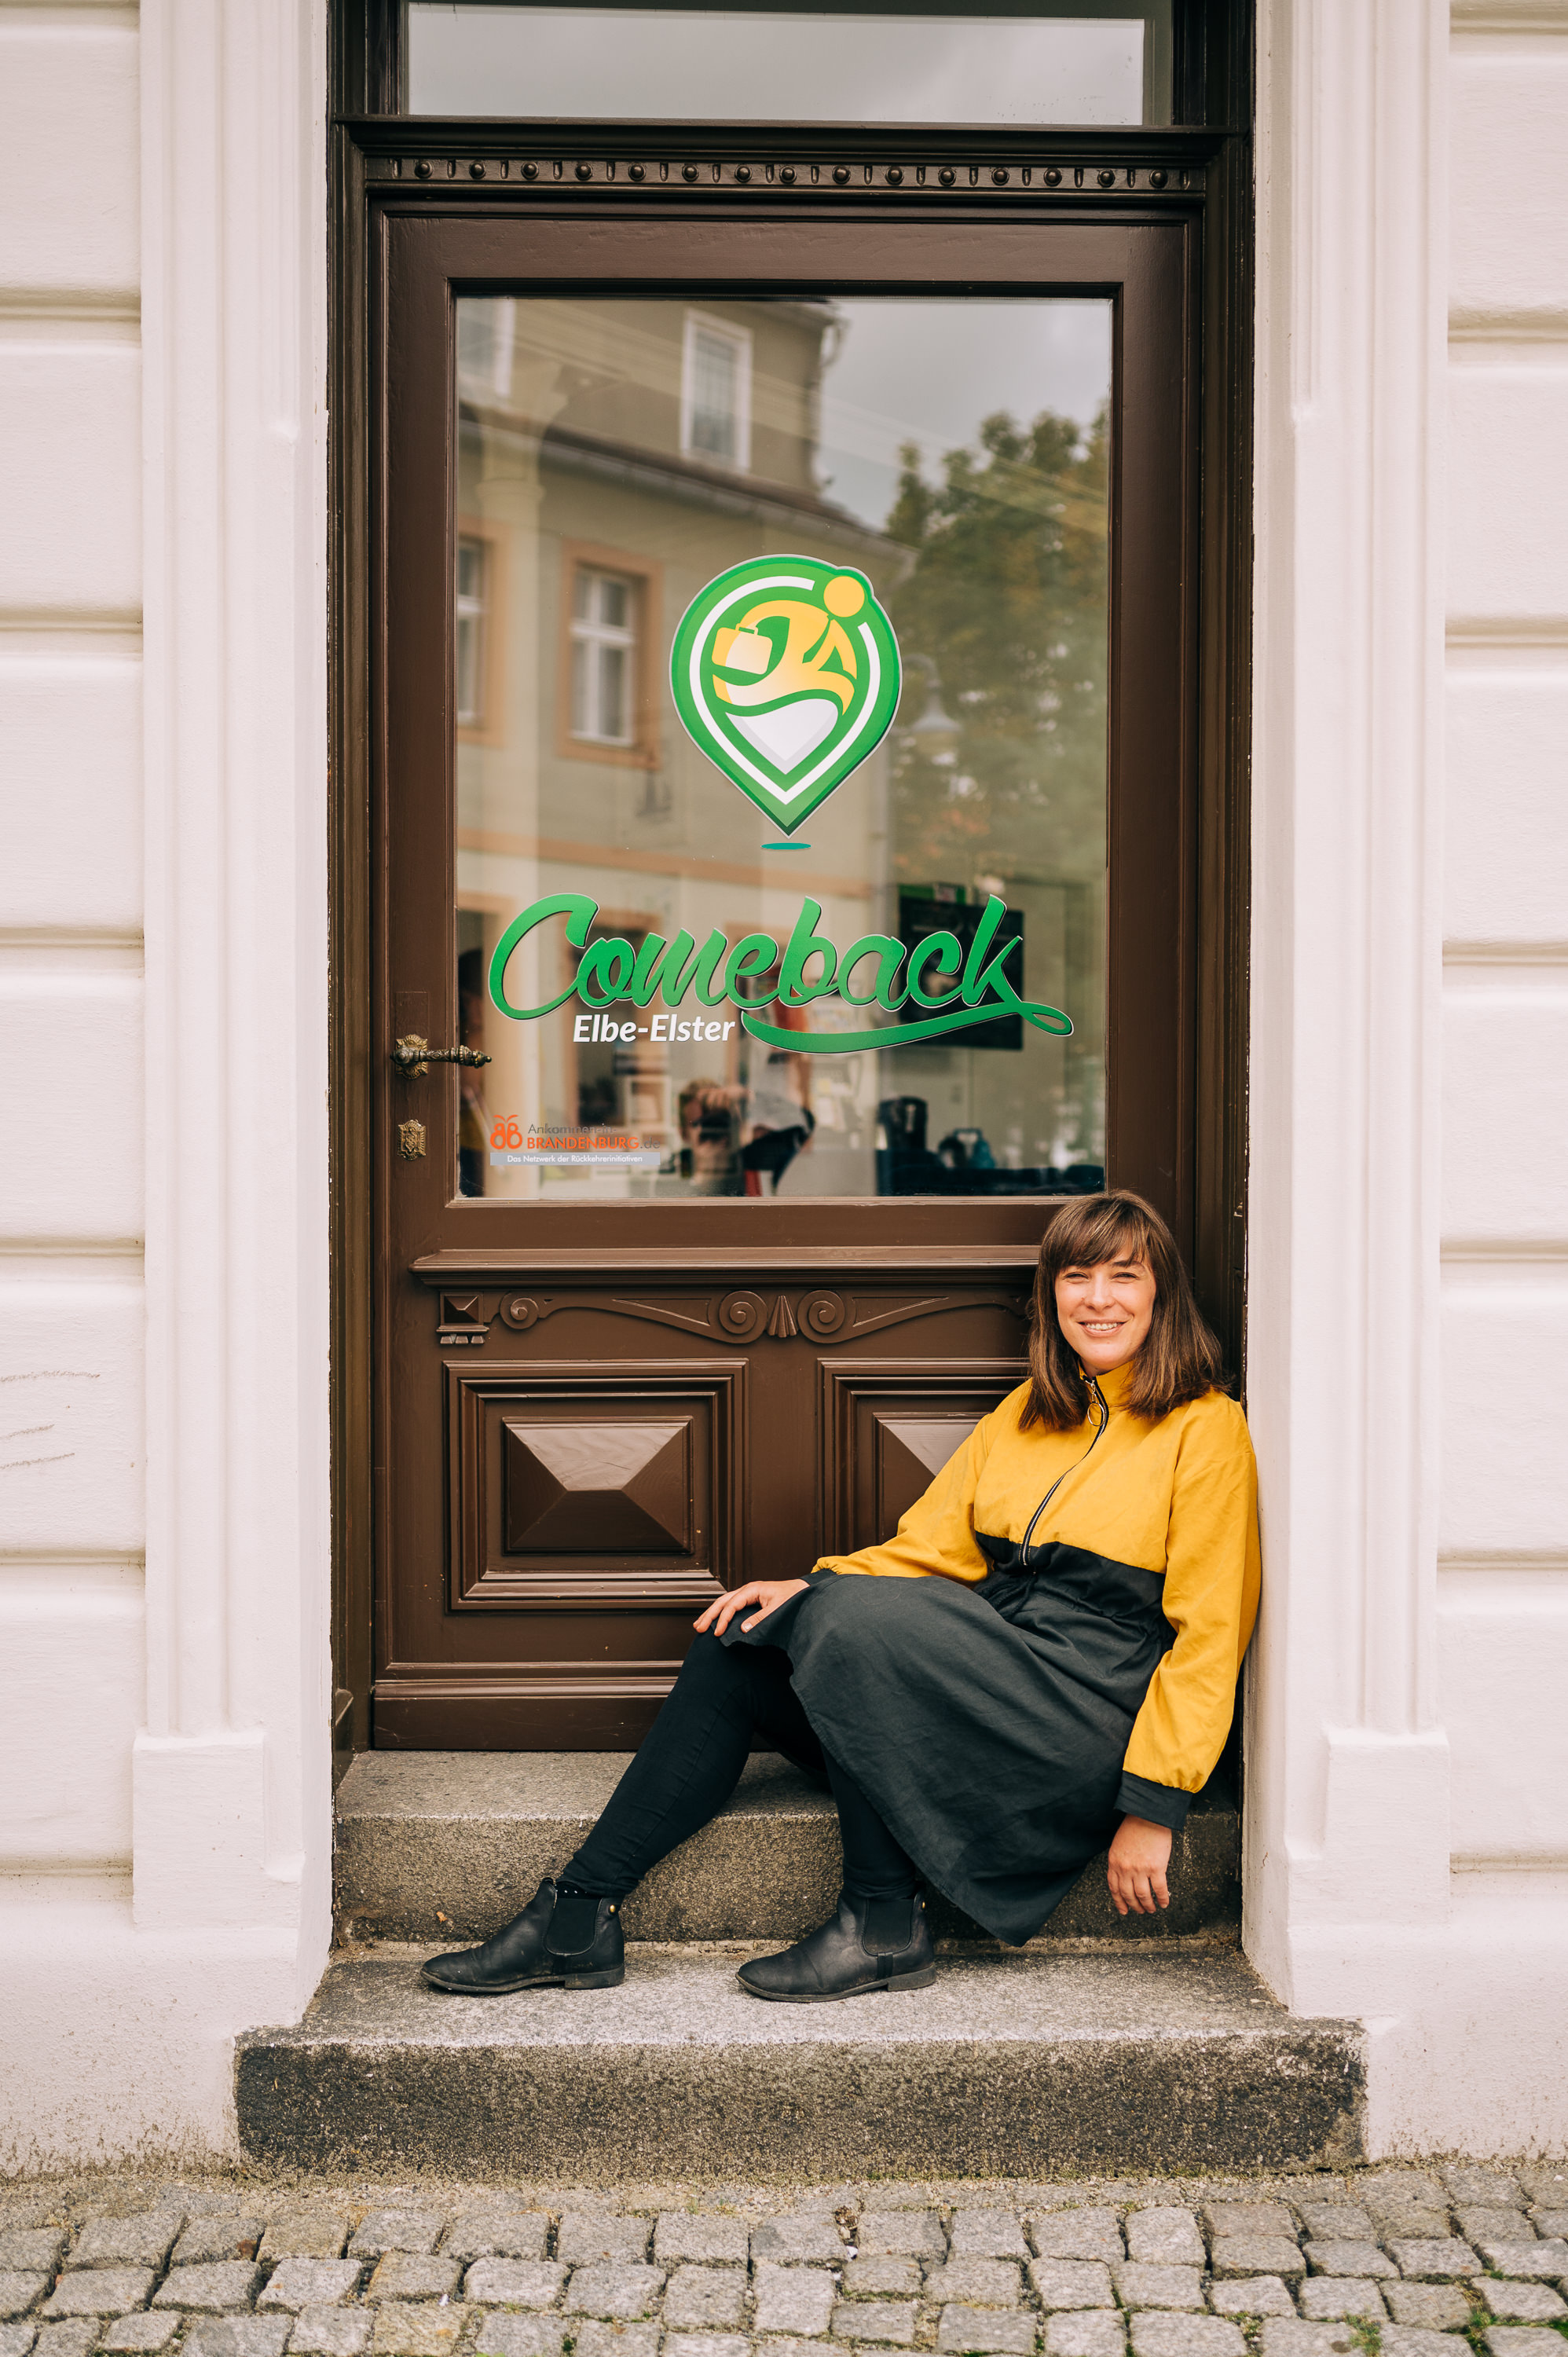 Eine junge Frau sitzt lächelnd in einem Hauseingang. Auf der Eingangstür steht bedruckt "Comeback Elbe Elster".